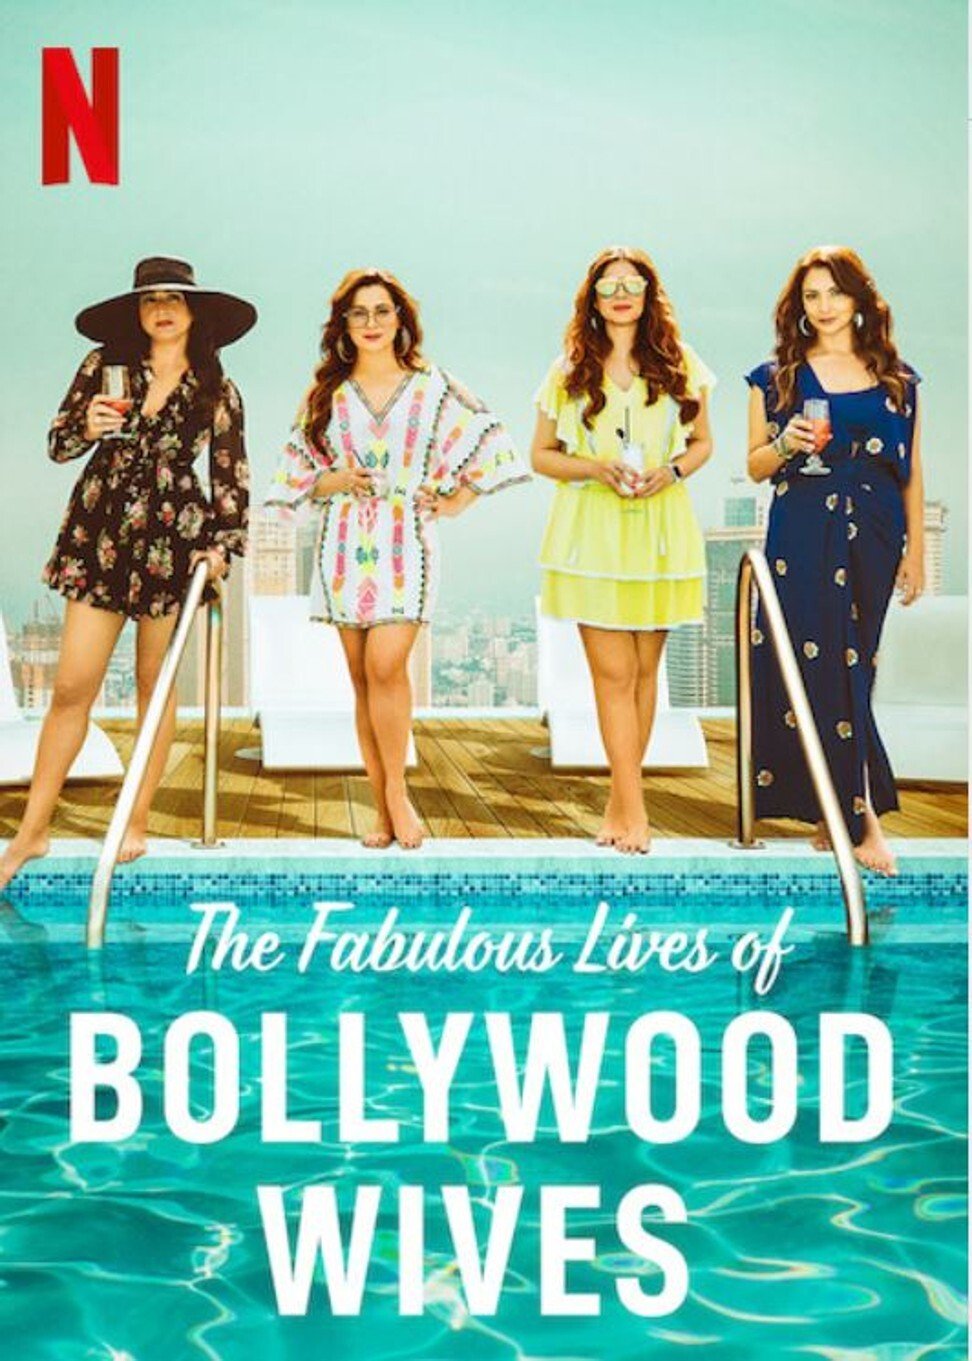 ดูหนังออนไลน์ฟรี Fabulous Lives of Bollywood Wives Season 1 Ep04 แฟบูลูส ไลฟ์ ออฟ บอลลีวู๊ด ไวส์ท ปี1 ตอนที่4